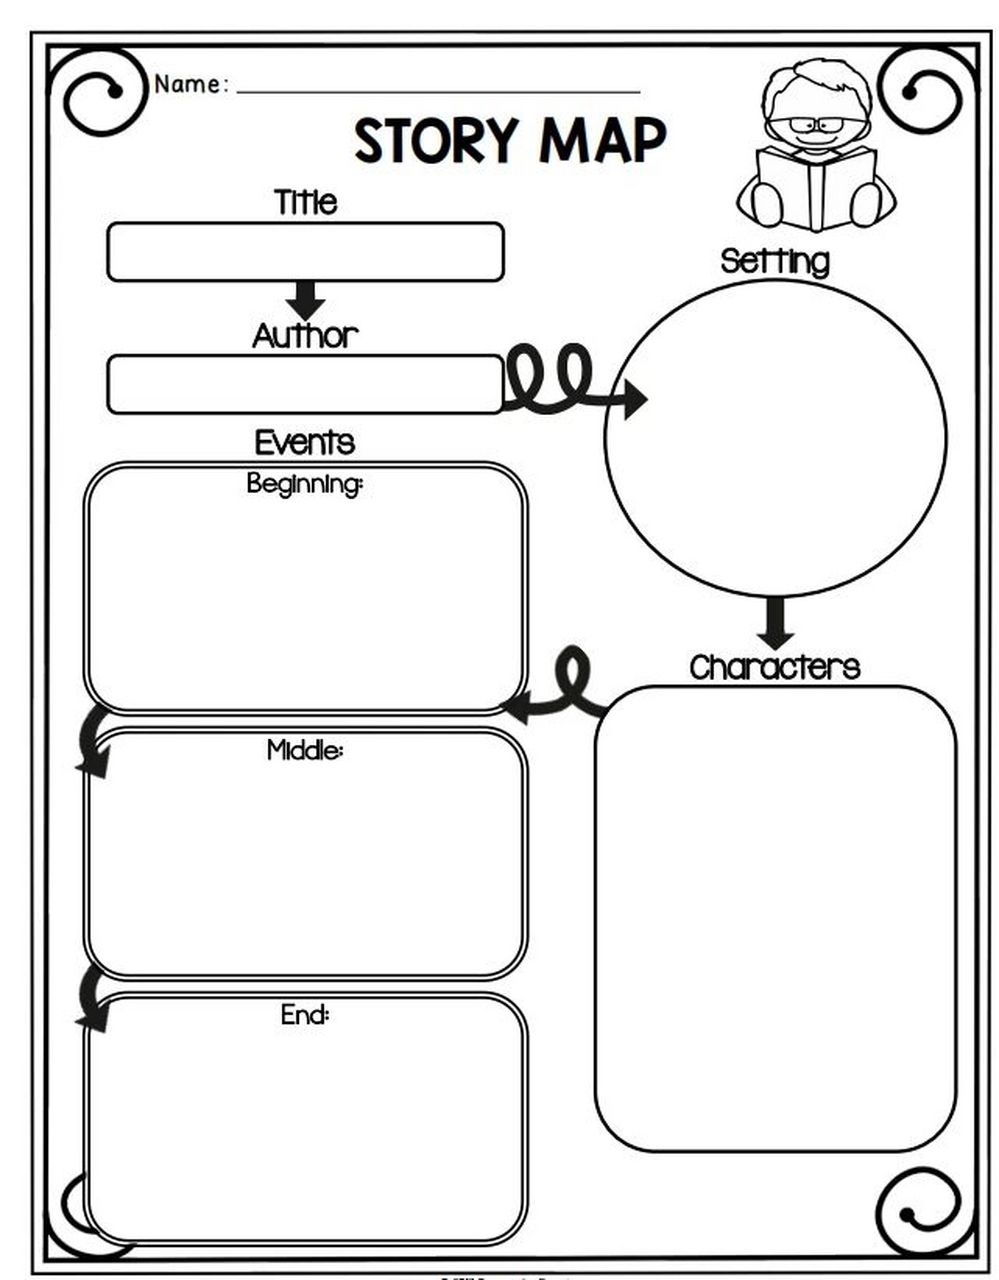 storymap英语模板图片